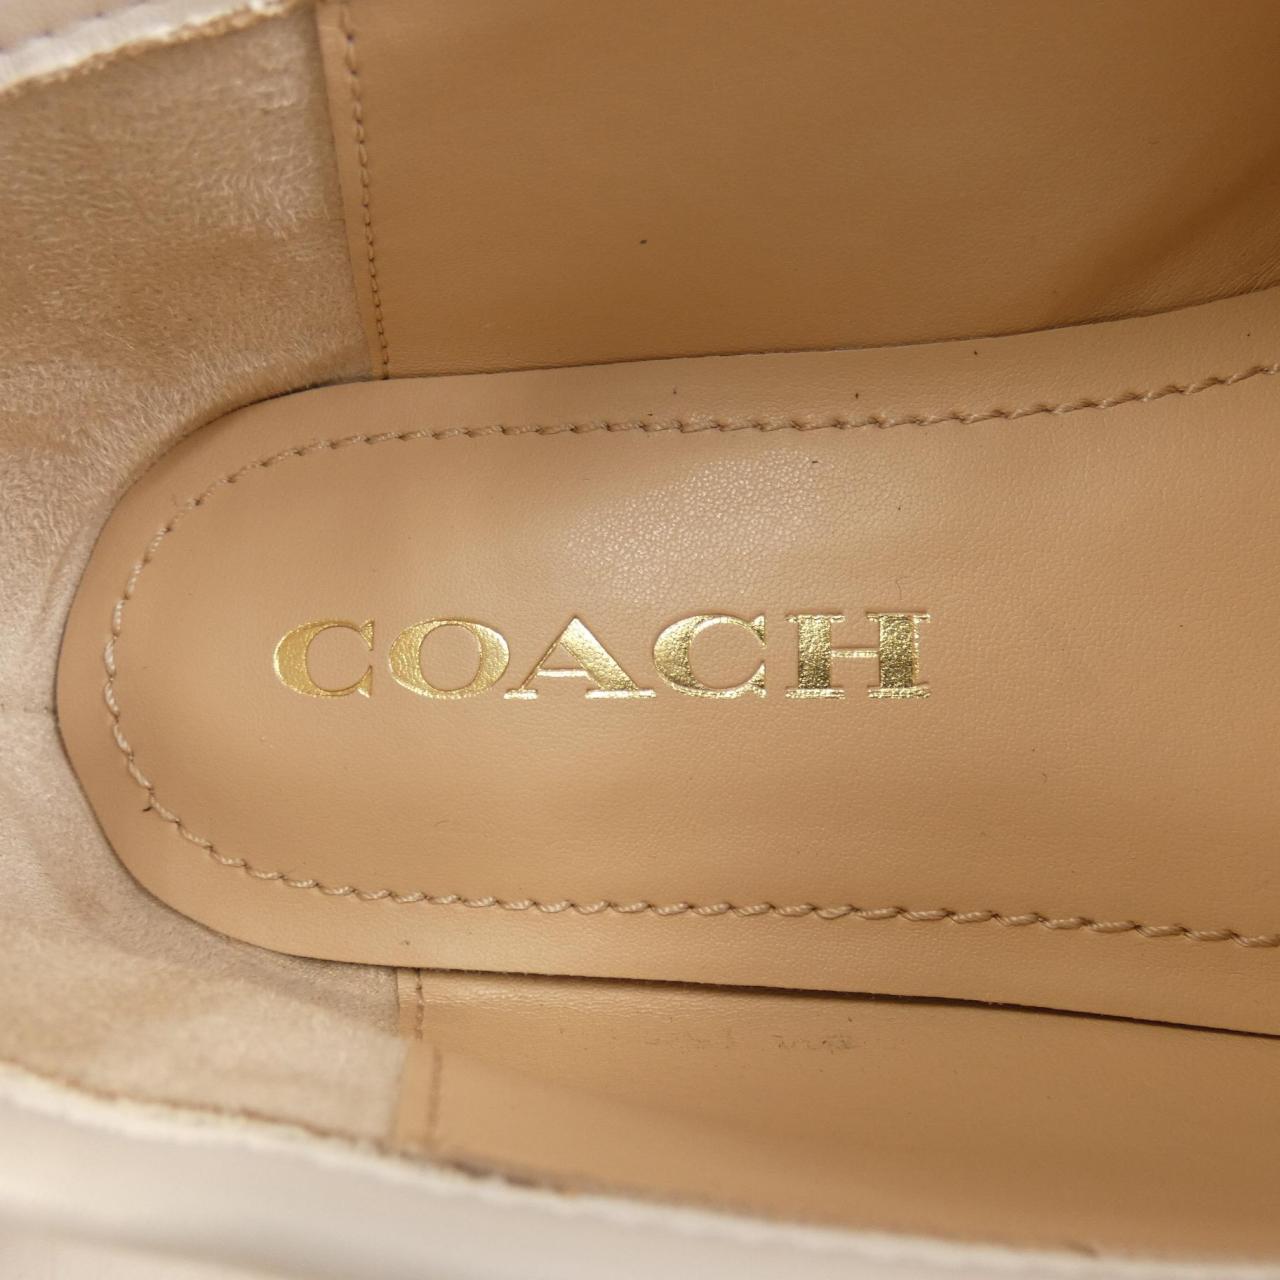 Coach COACH shoes